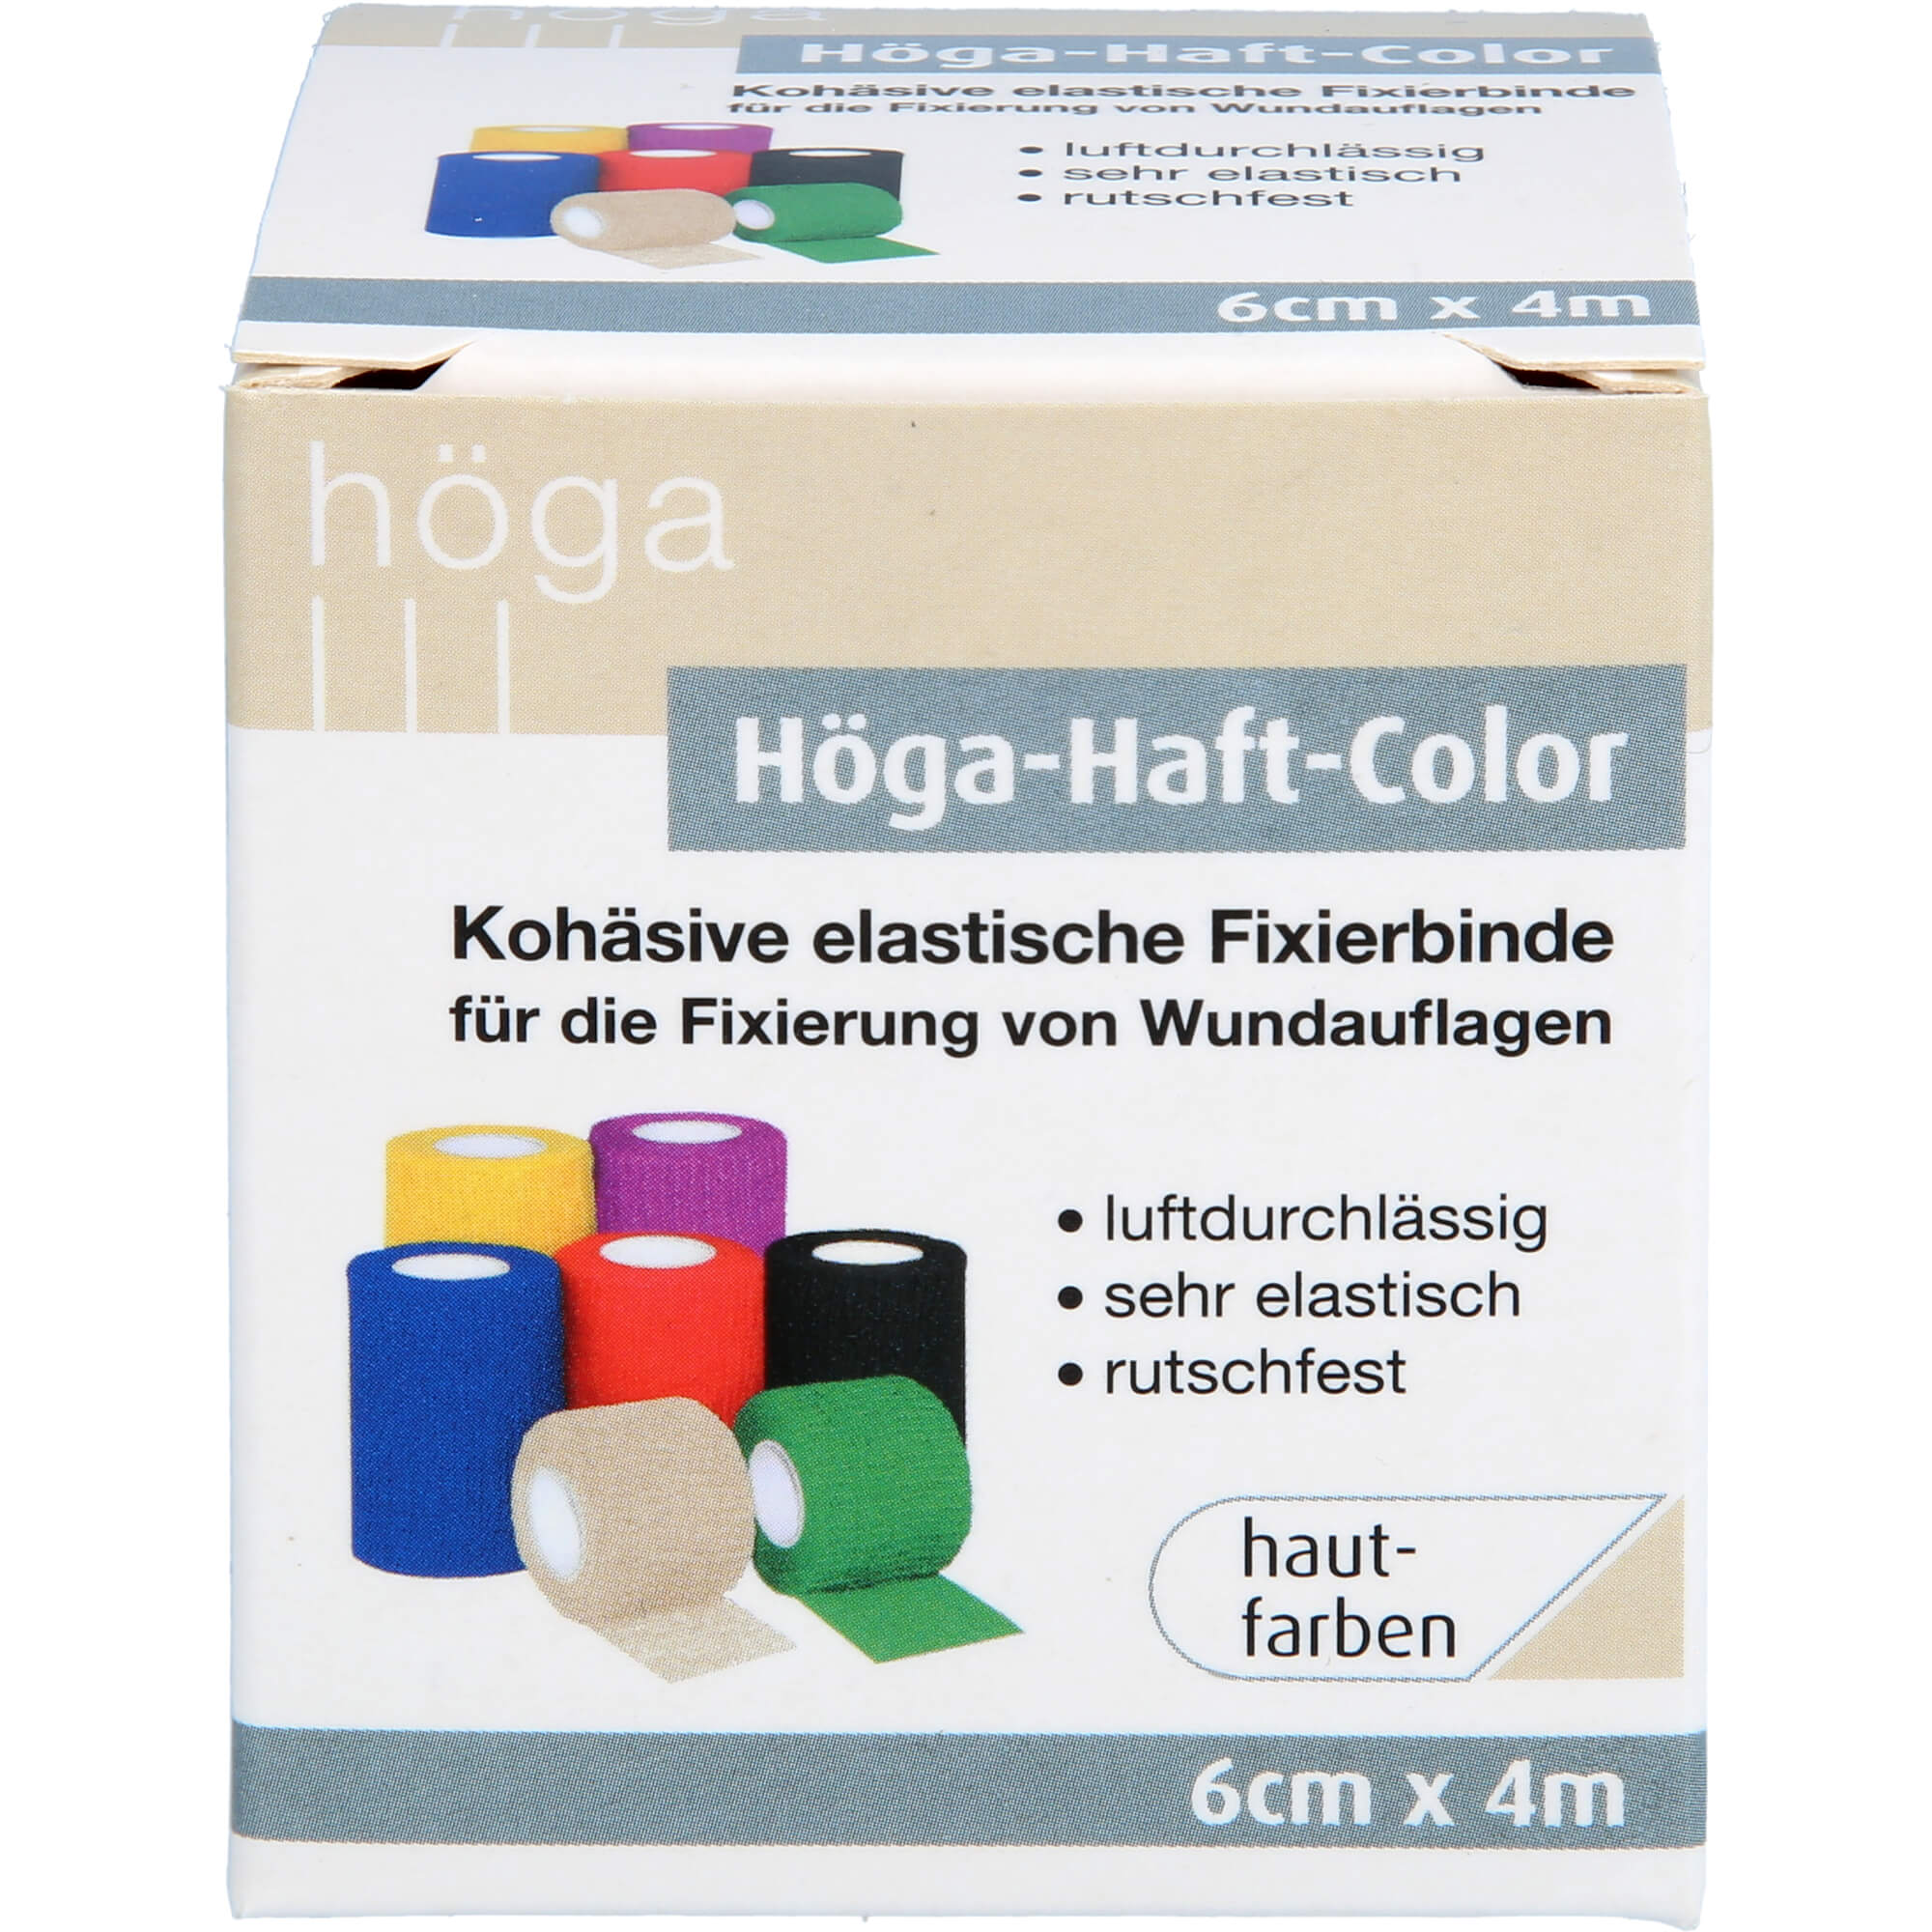 HÖGA-HAFT Color Fixierb.6 cmx4 m hautfarben